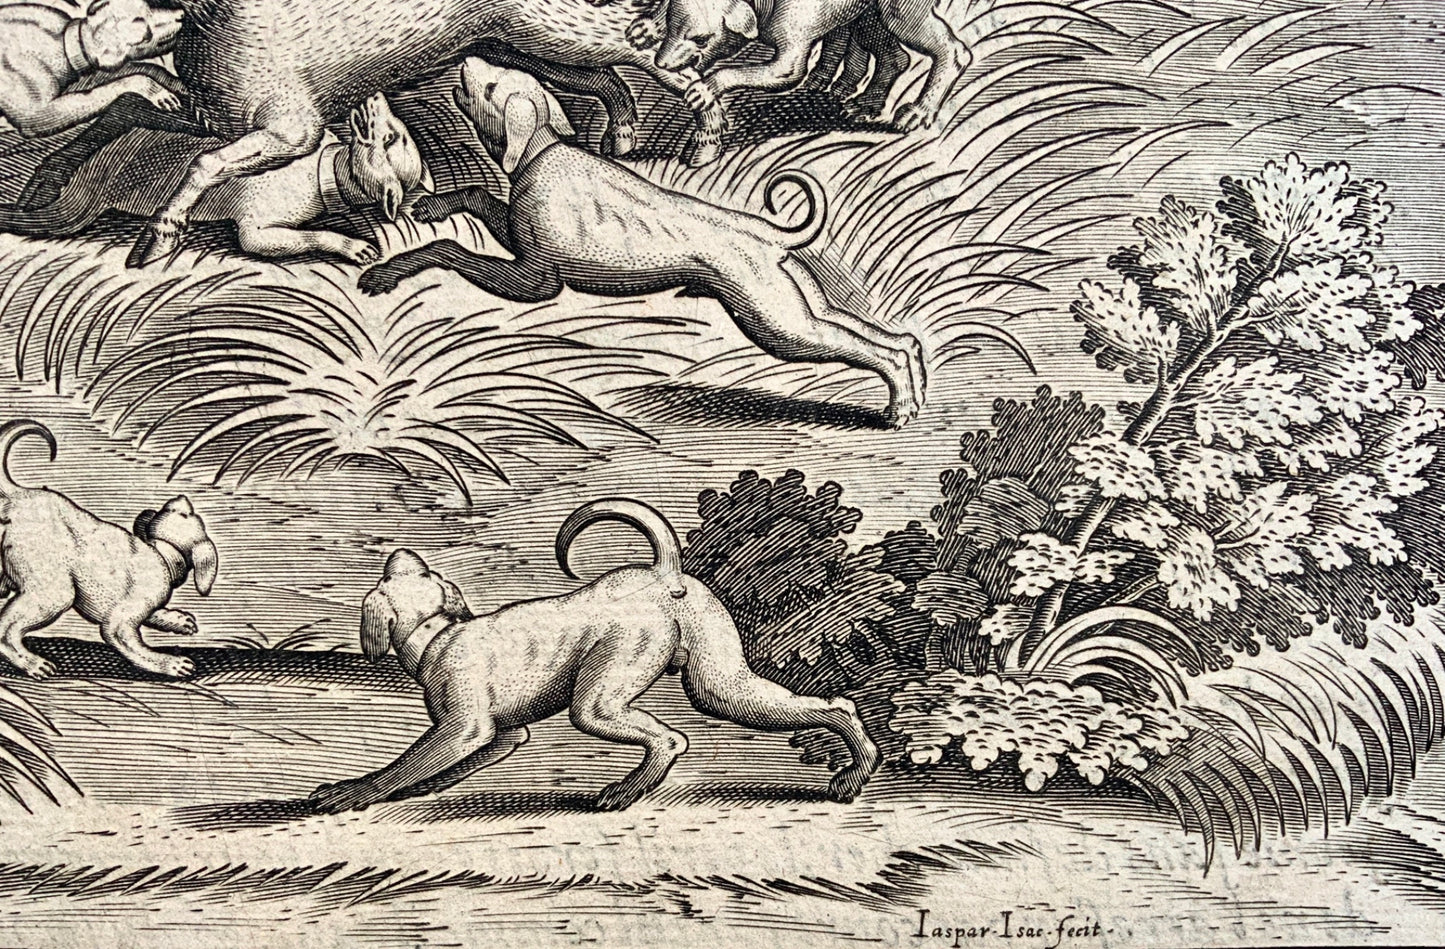 Antoine Caron (1521–1599); Jasper Isaacs - Folio - Chasse des Bestes - 1615 - Mythology